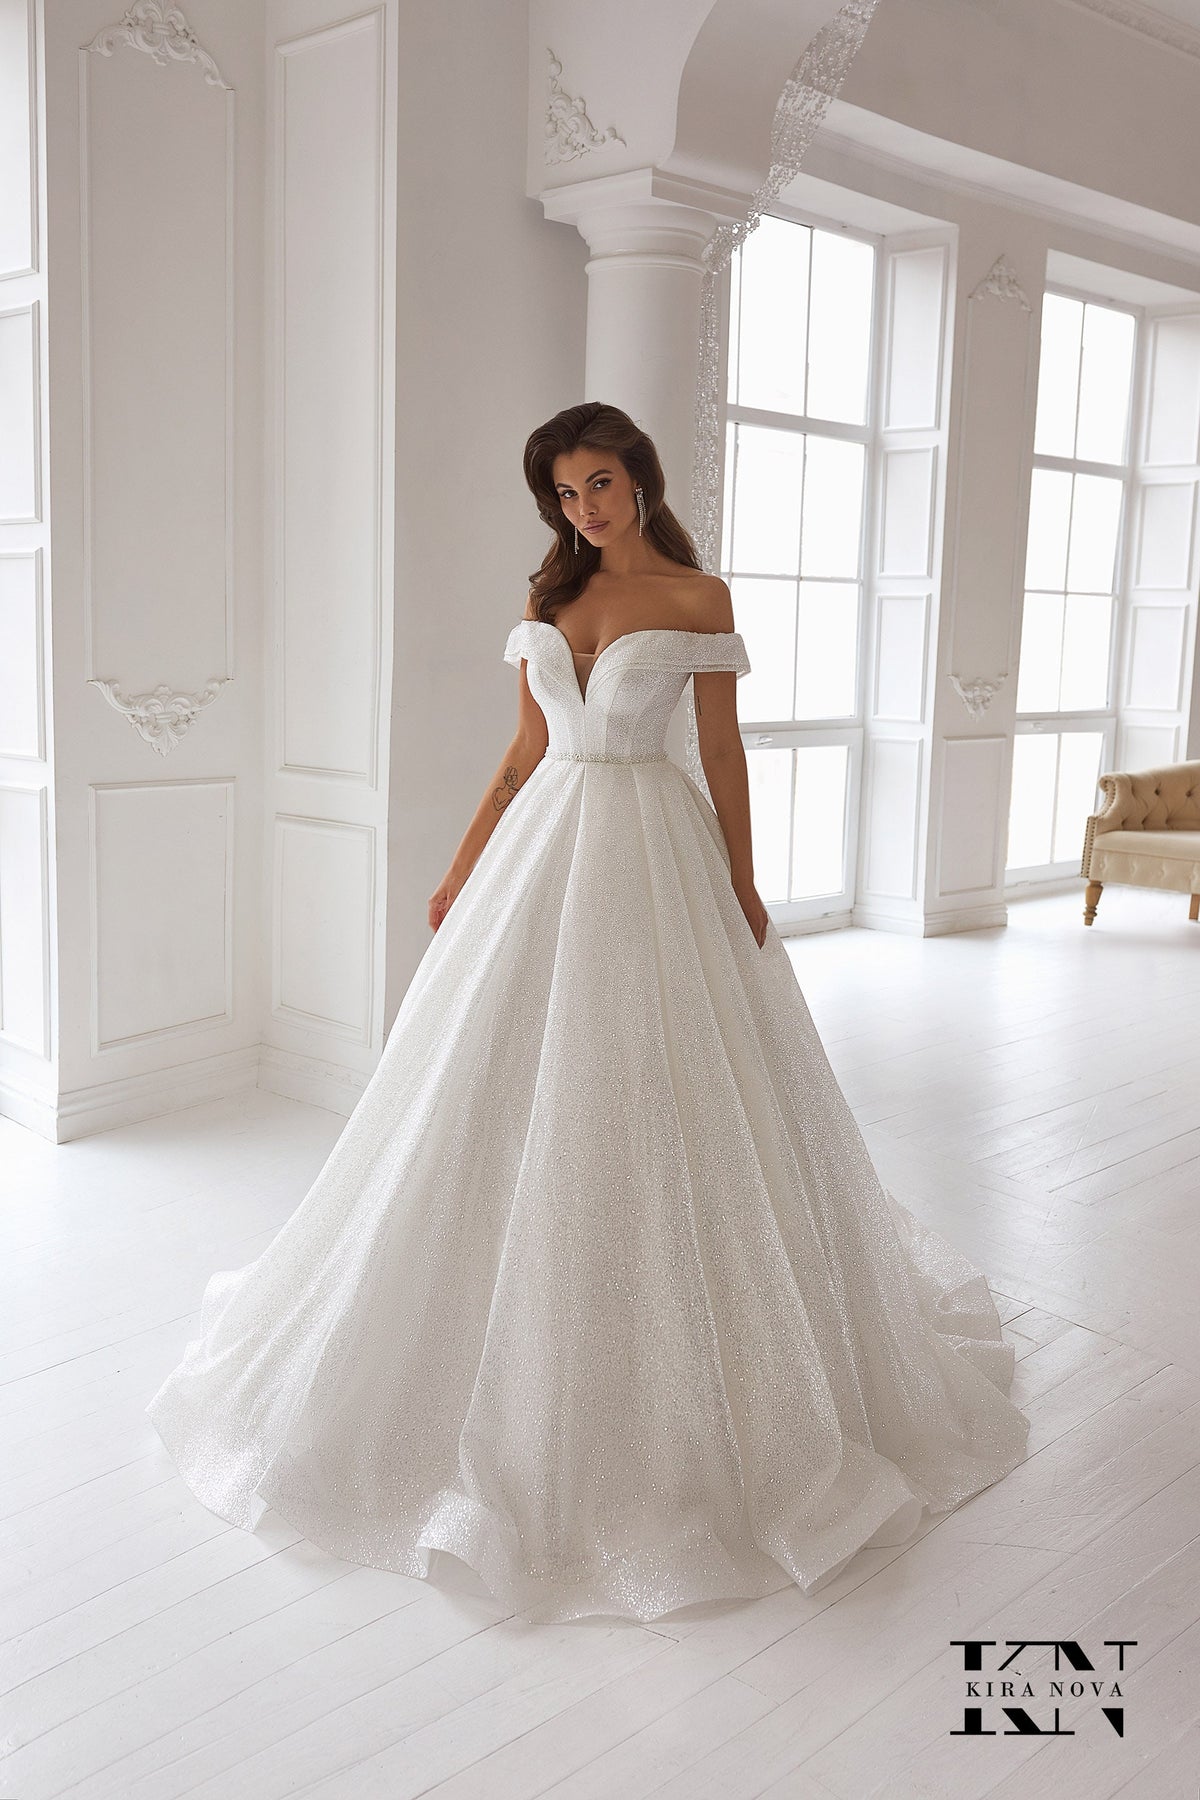 Classic Full Aline Glitter Sleeveless Off the Shoulder Full Ball Gown Wedding Dress Bridal Gown V Neck Open Back Minimalist Design